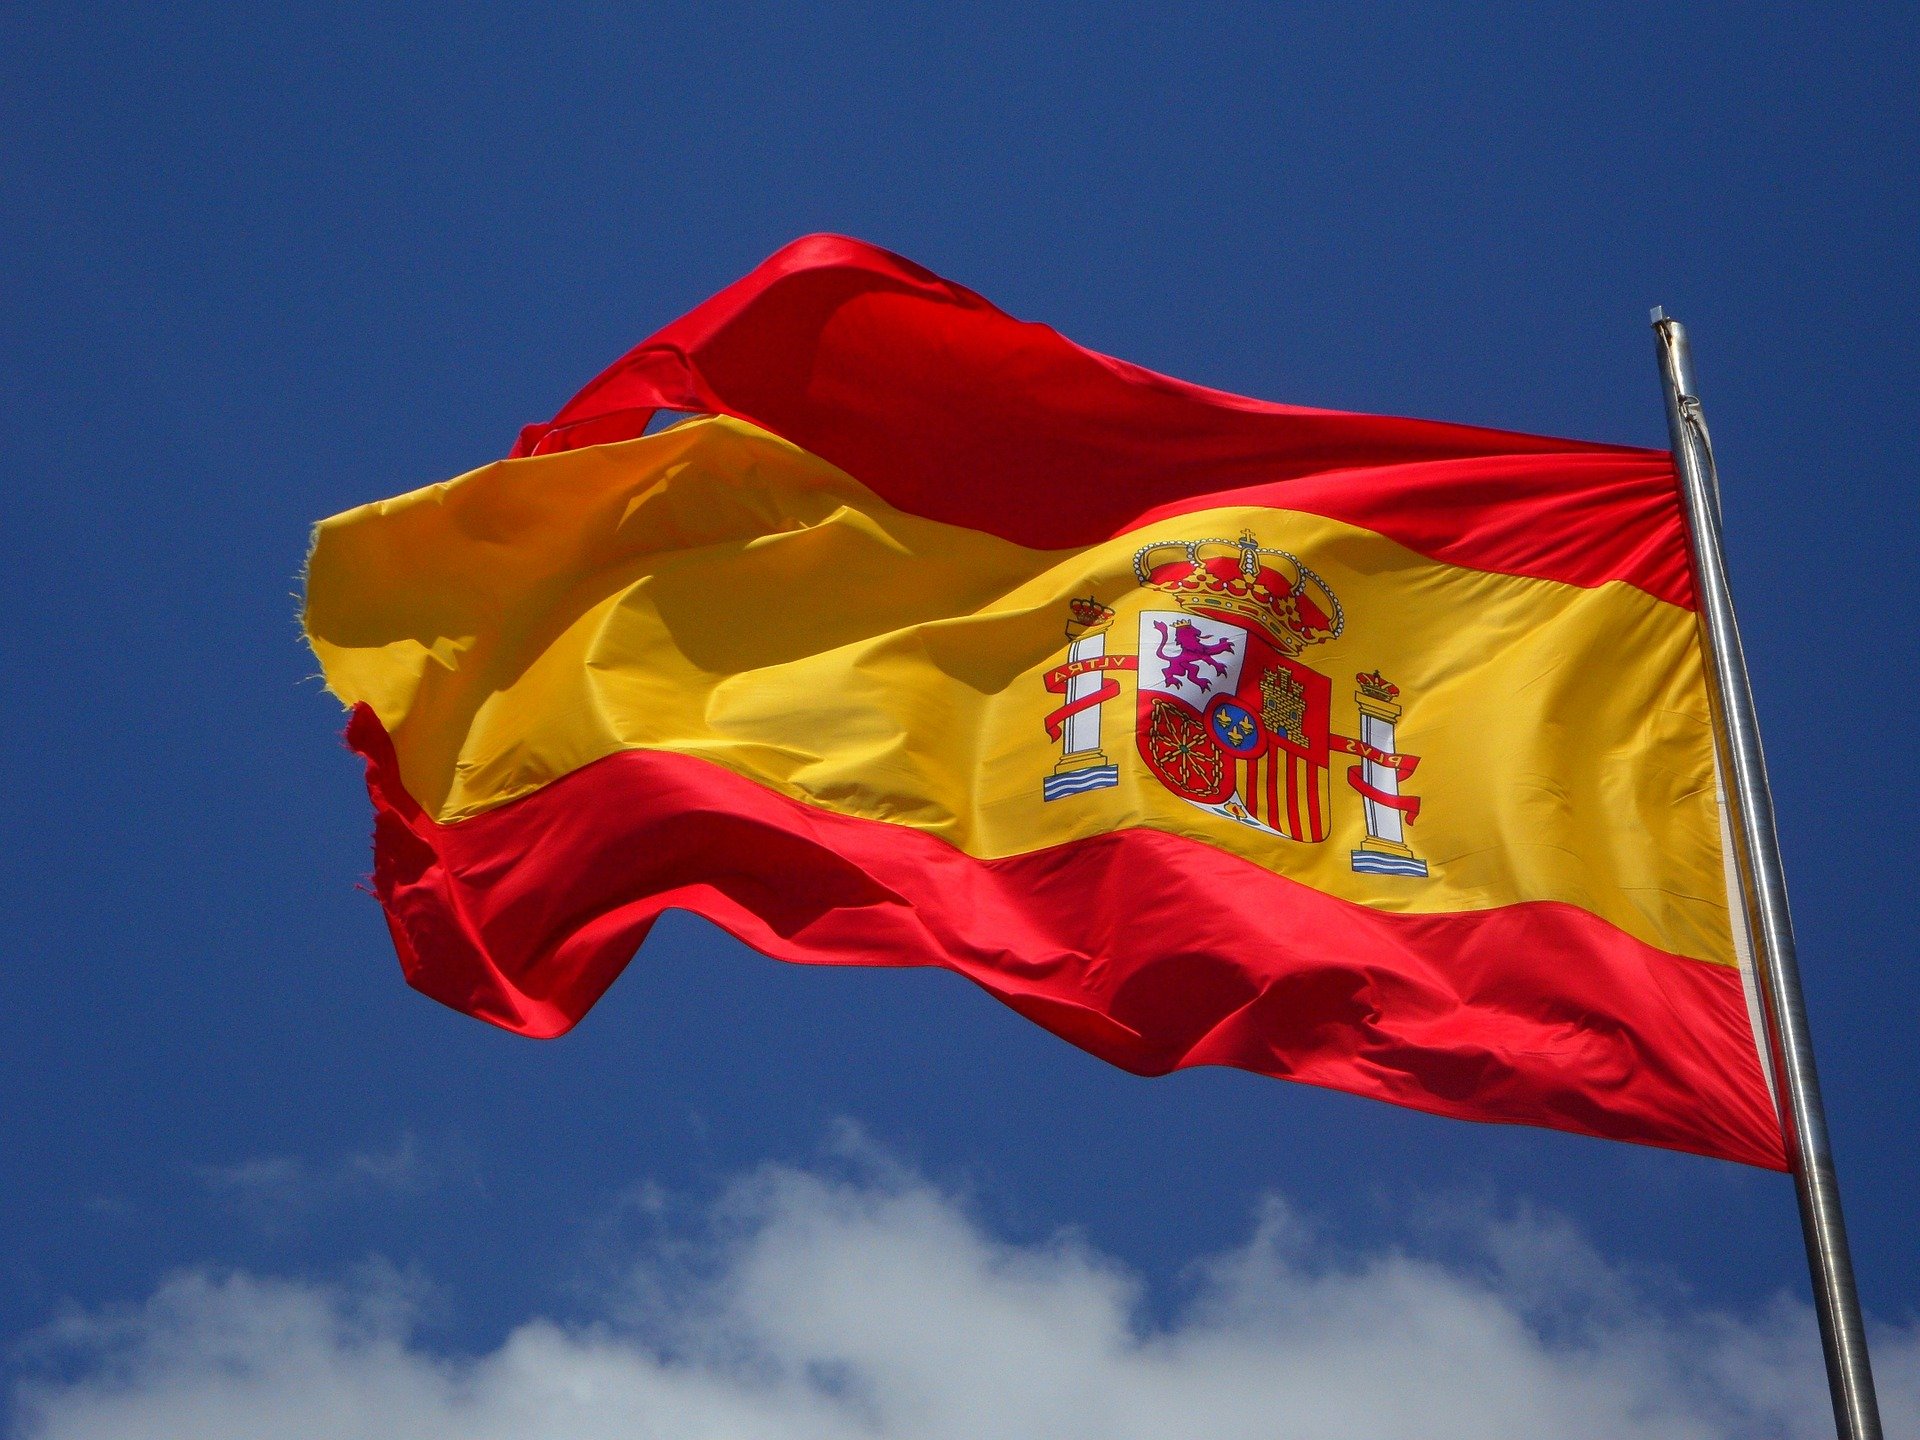 El himno de España: ¿posible origen andalusí?